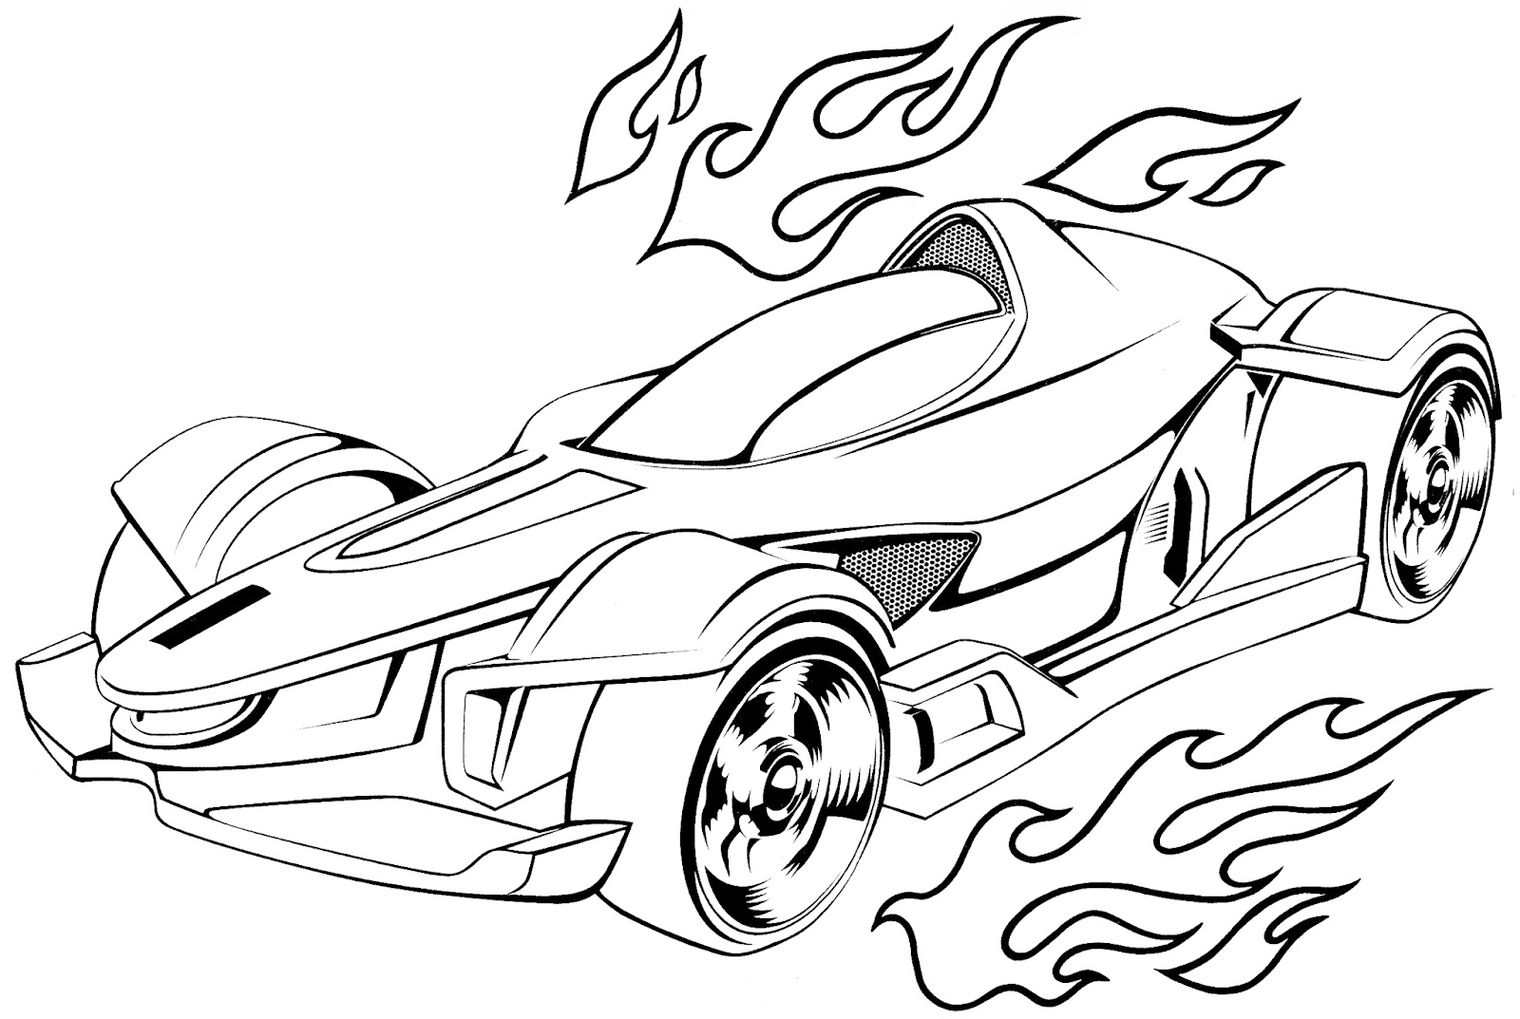 Desenho Para Colorir Carros - Imagens Grátis Para Imprimir - img 20749